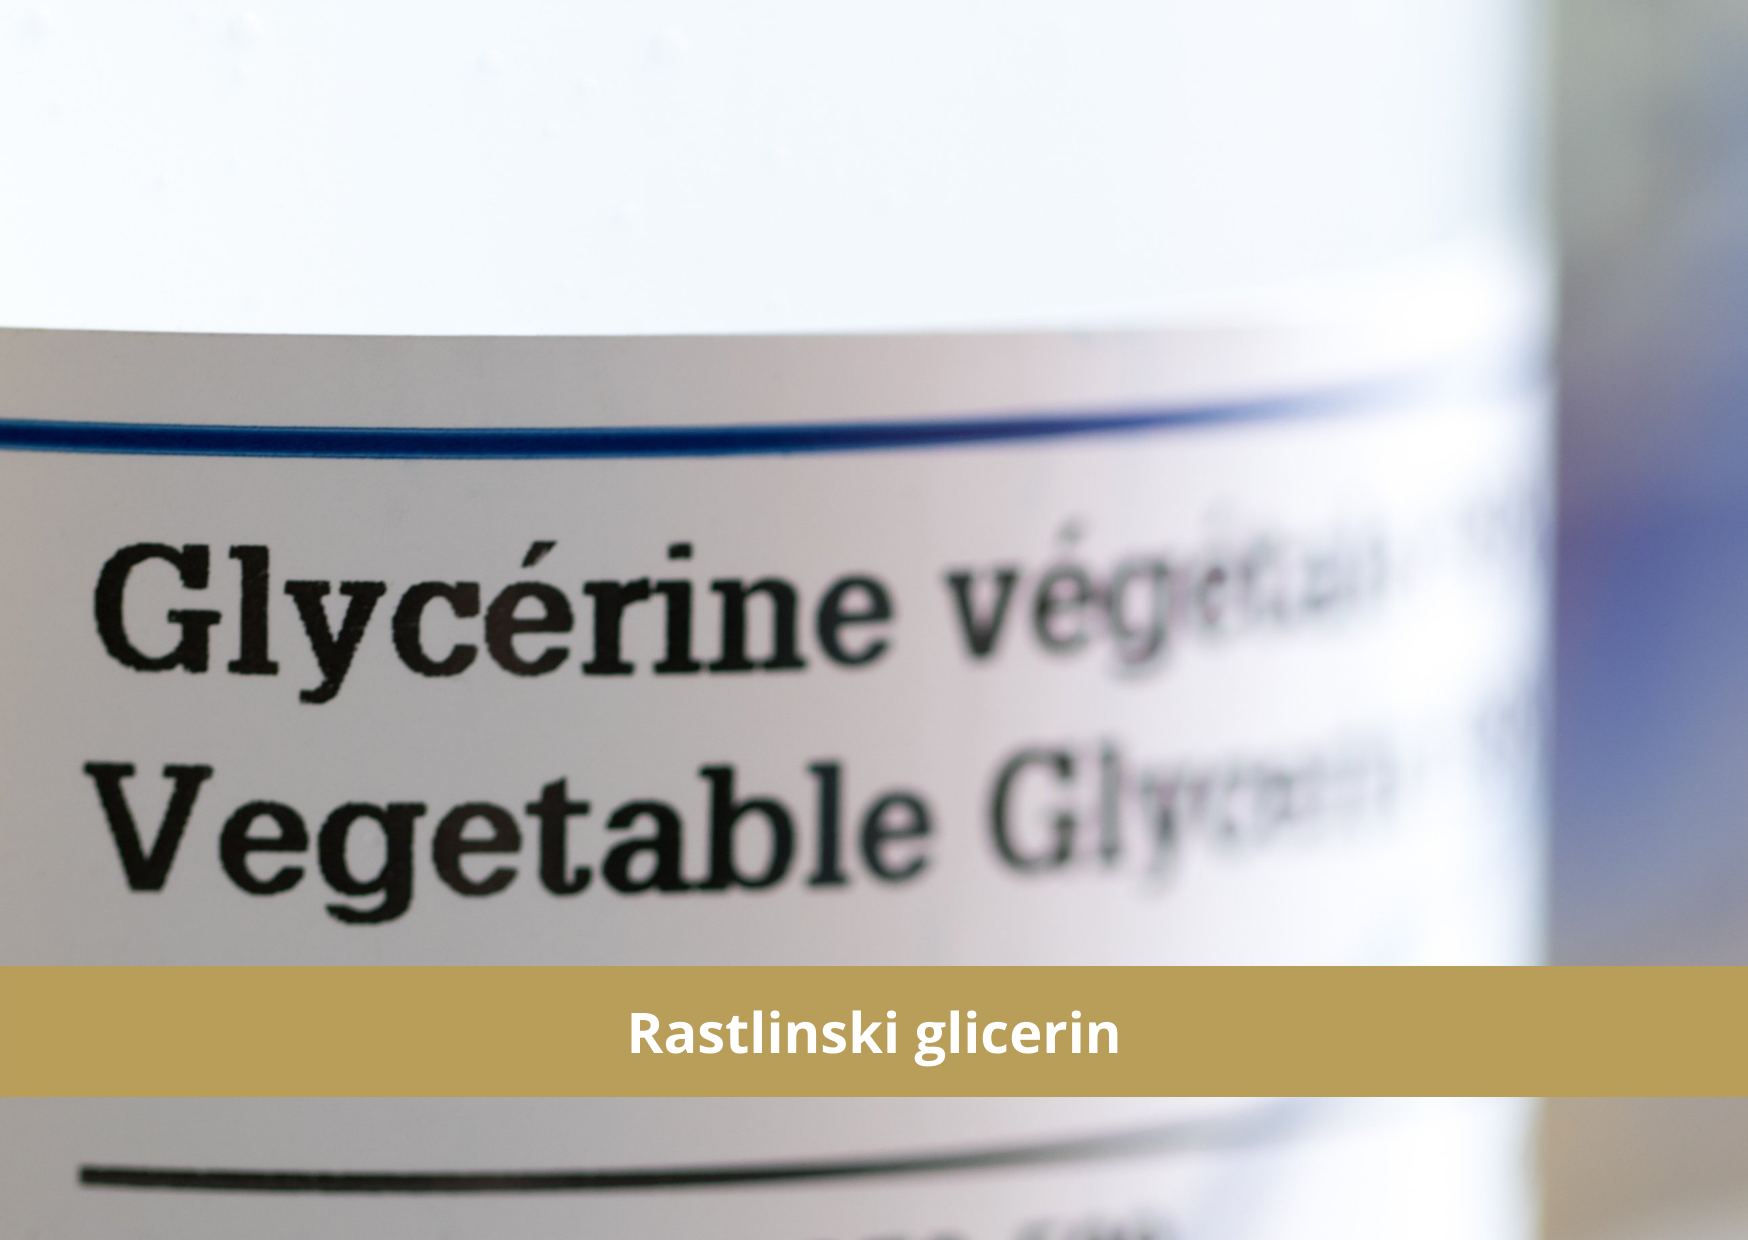 Rastlinski glicerin